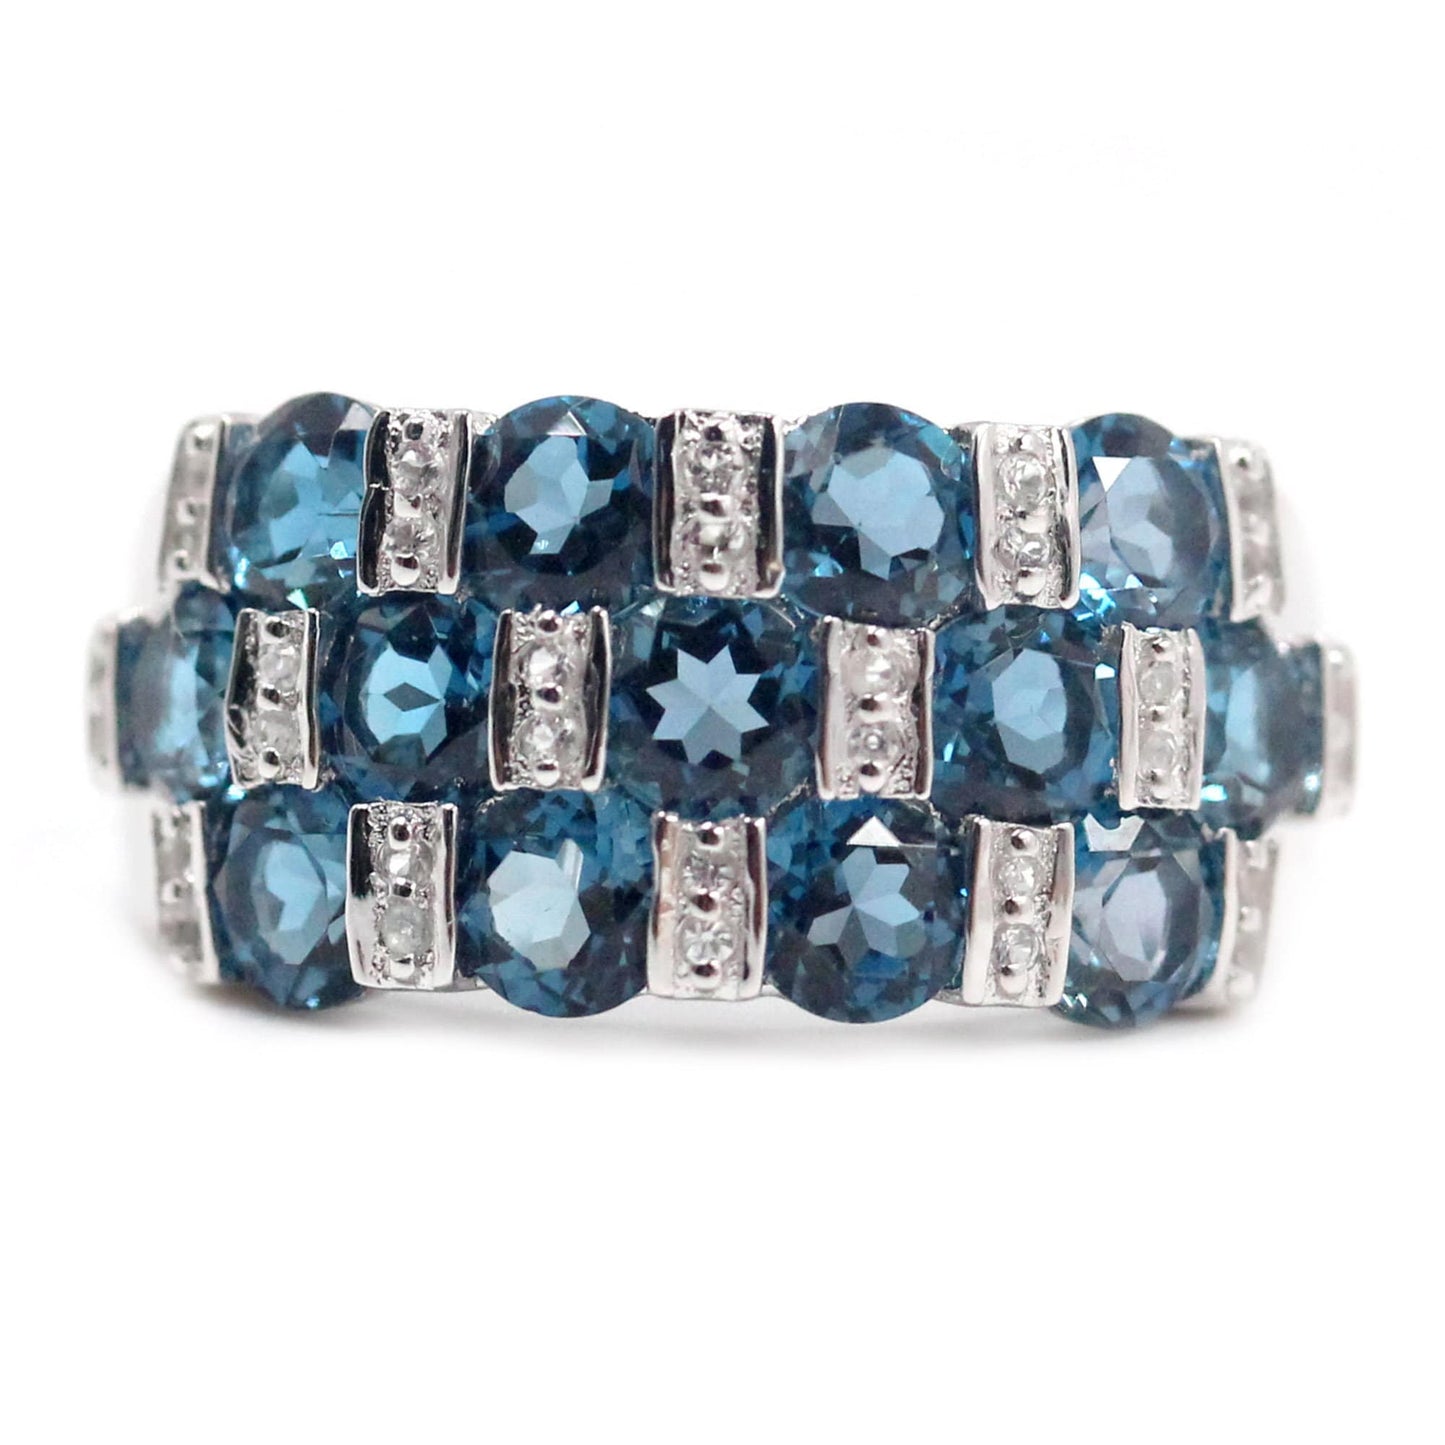 London Blue Topaz Gemstone Ring, 925 Sterling Silver Ring, Engagement Ring, Birthstone Ring-Gemstone Jewelry Anniversary Gift-Gift For